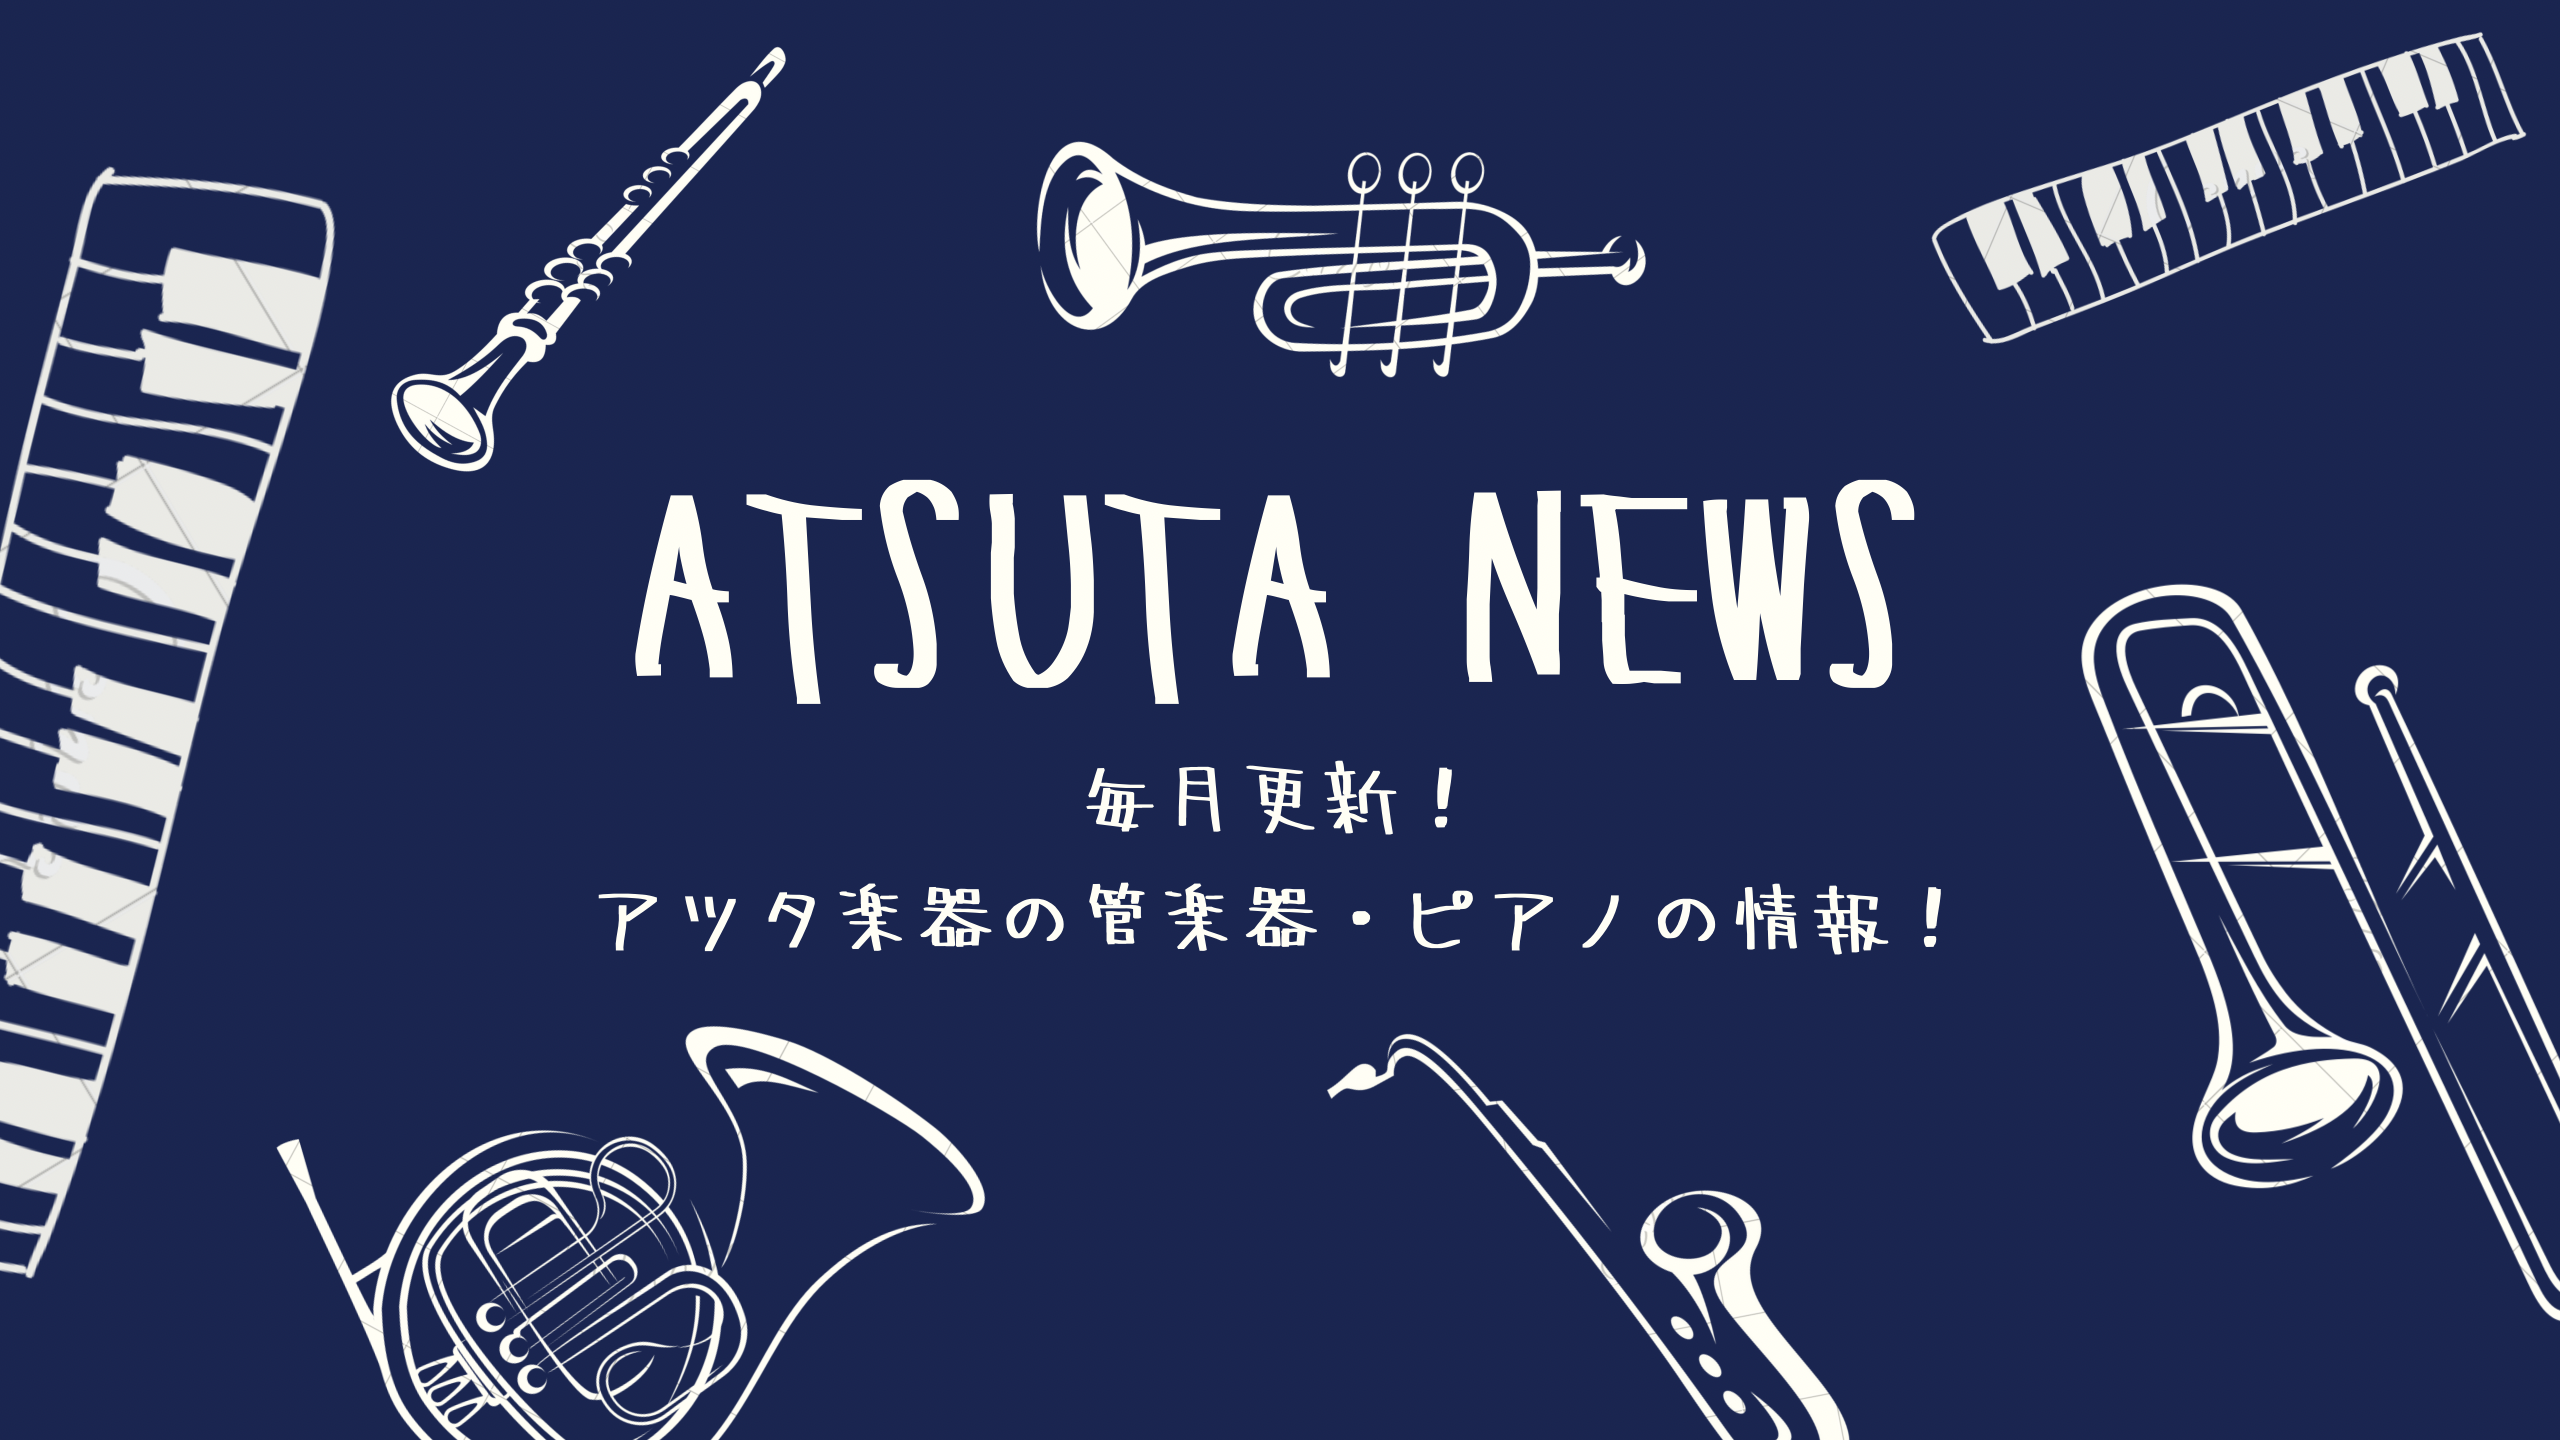 【ATSUTA NEWS Vol.8】